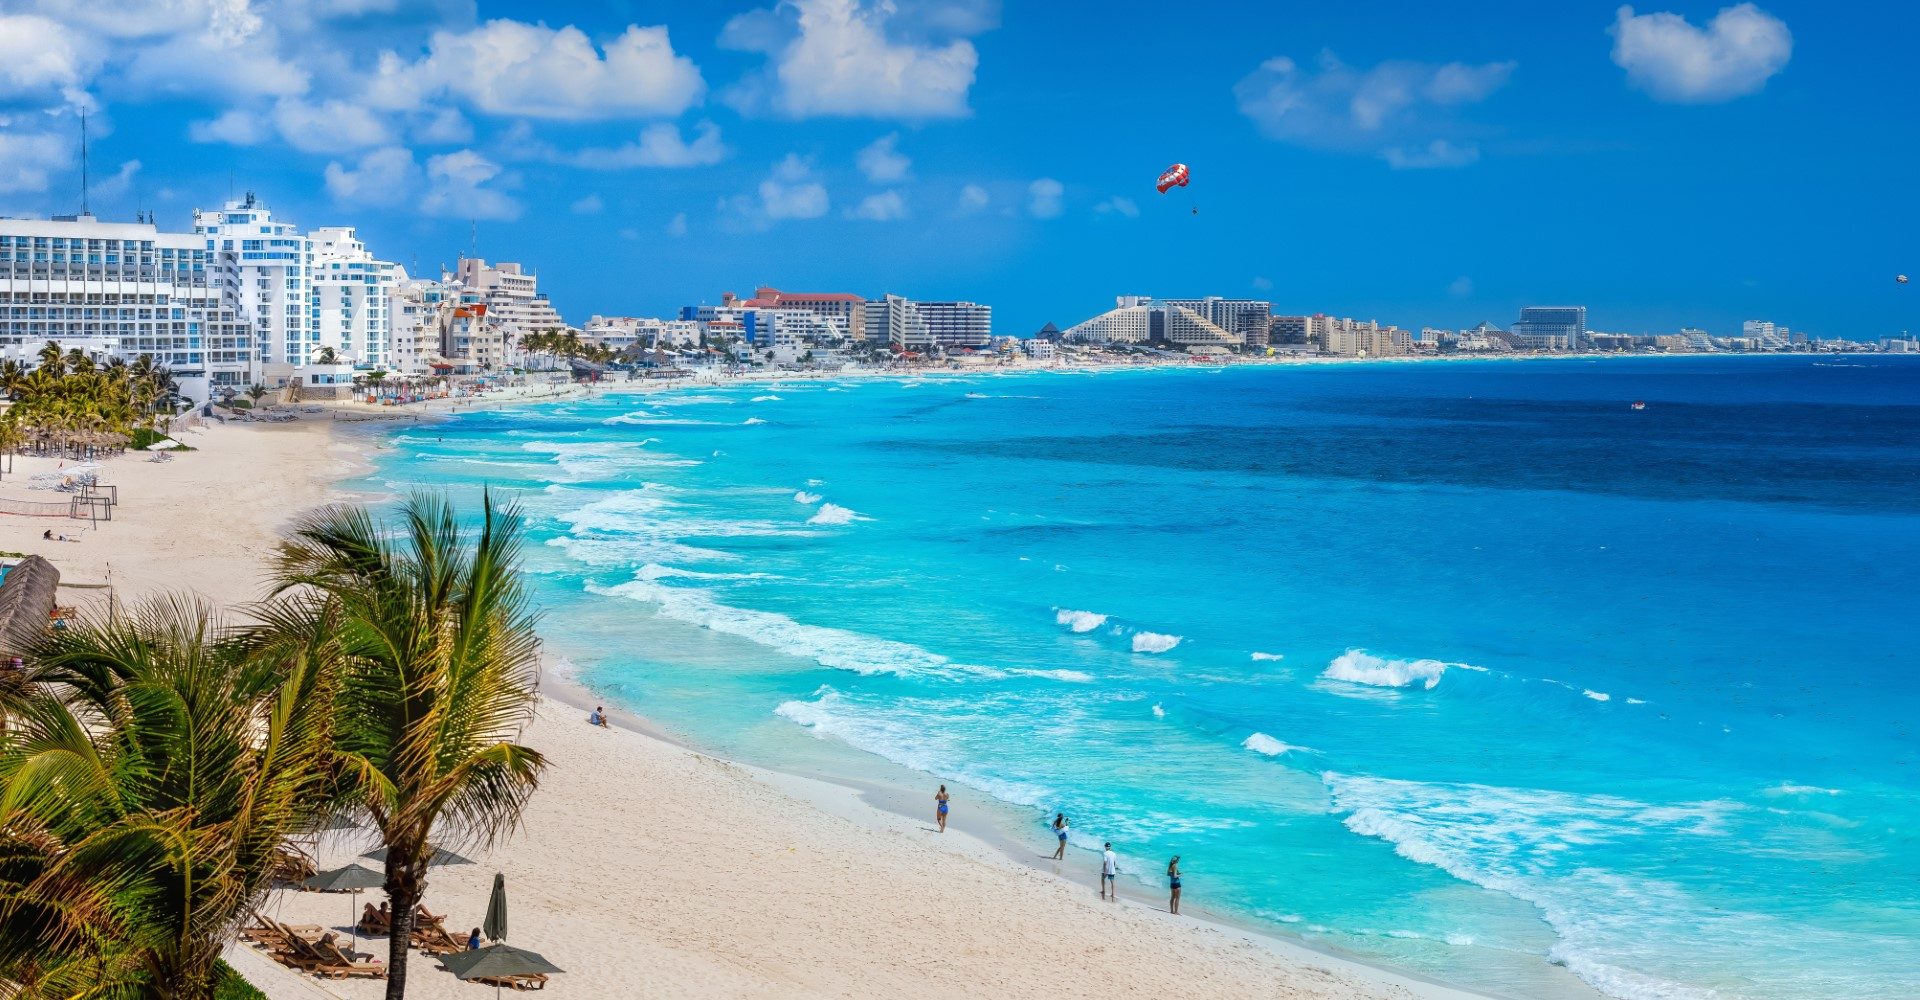 Beach near Cancun. (Photo internet reproduction)